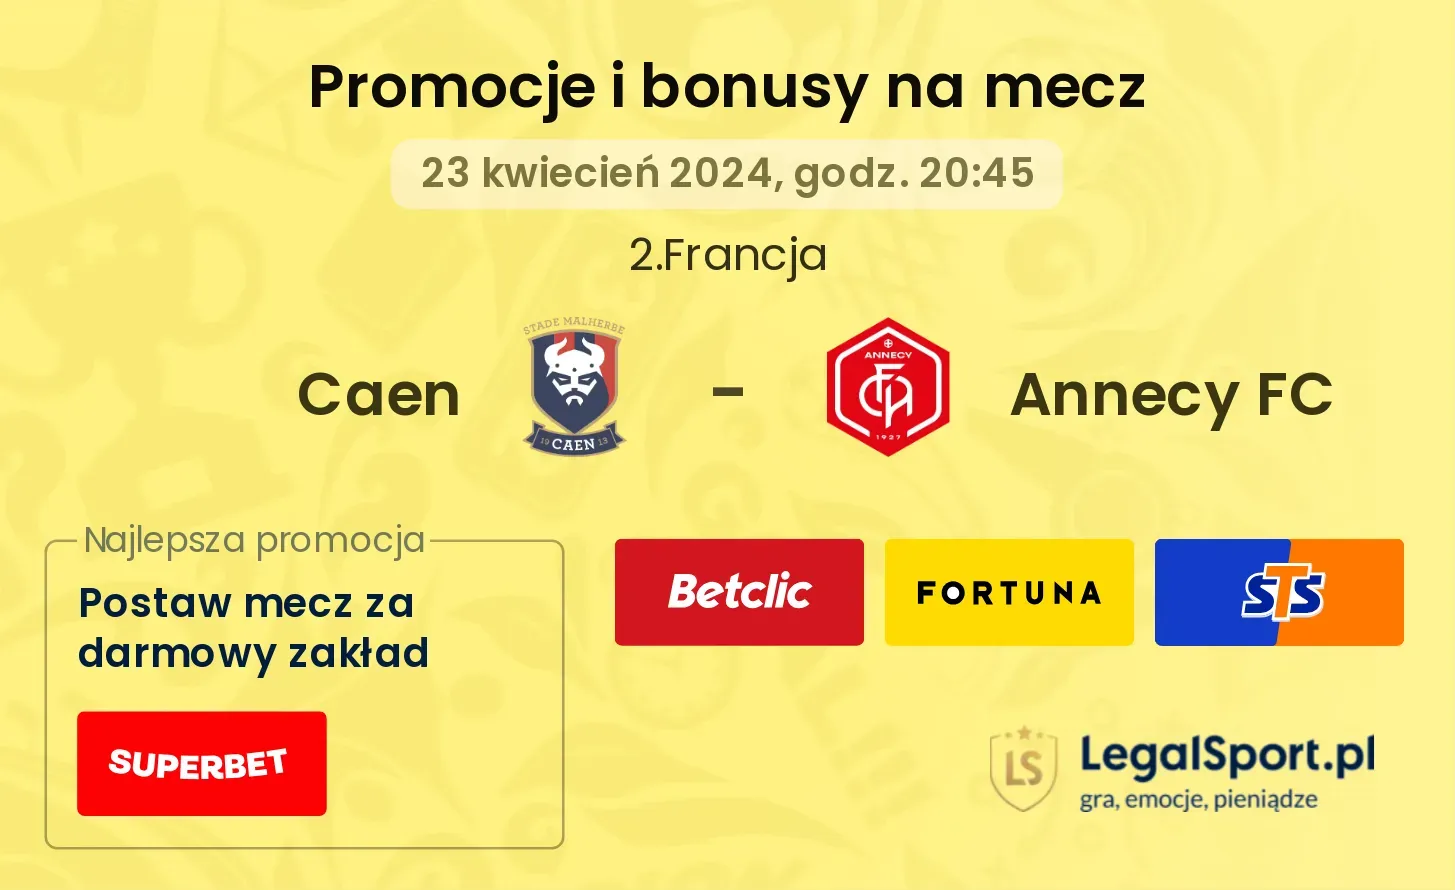 Caen - Annecy FC promocje bonusy na mecz